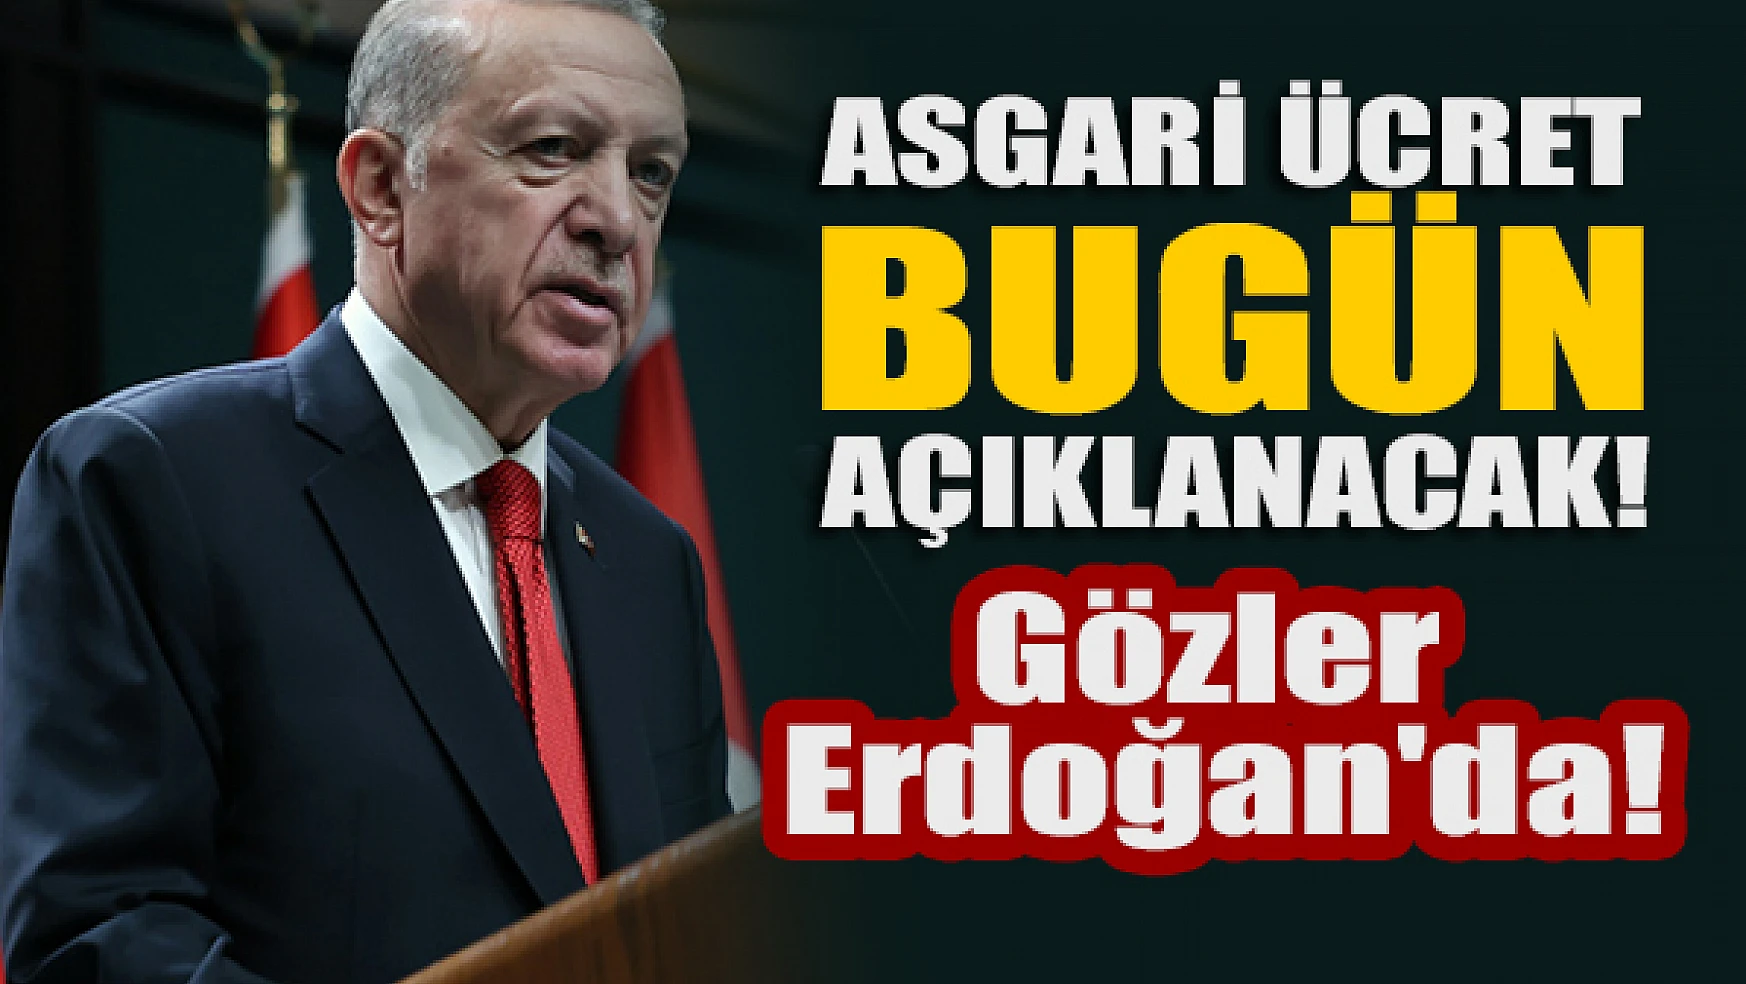 Asgari ücret bugün açıklanacak! Gözler Erdoğan'da!